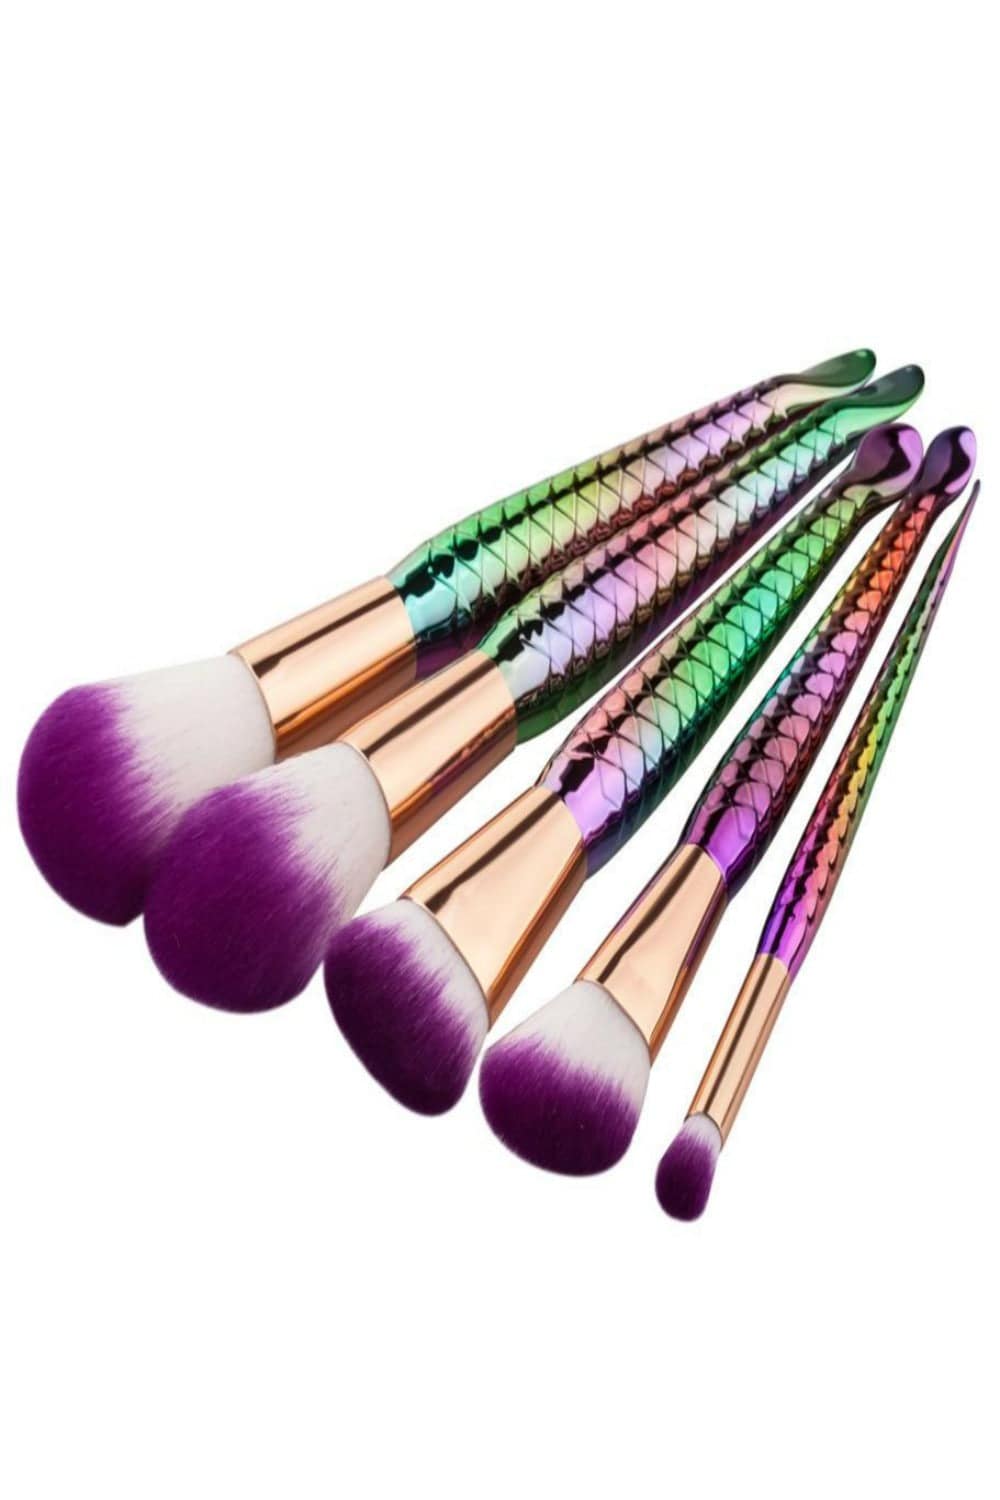 Mermaid Multicolor Makeup Brushes Set - 5 Pcs - TGC Boutique - Makeup Brush Set